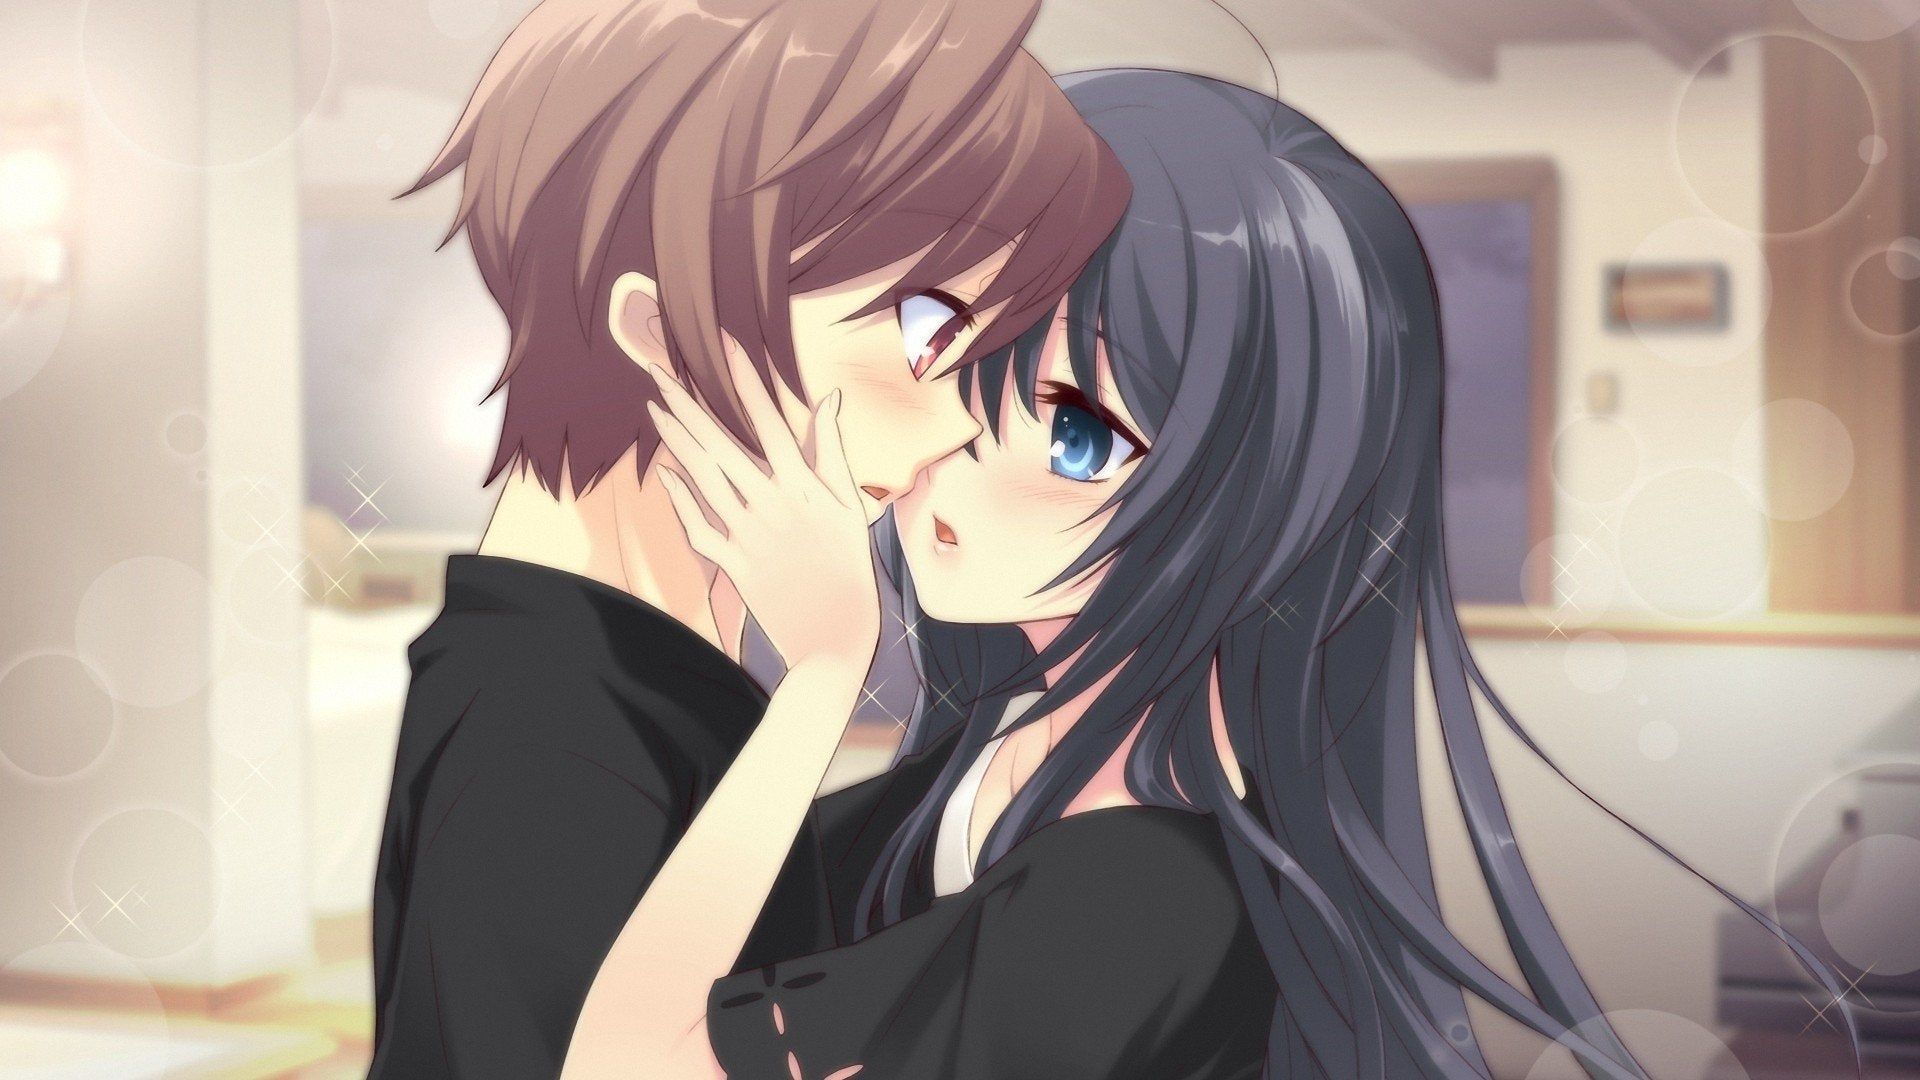 Anime couple kissing #anime #animecouple #kissing #love #t…